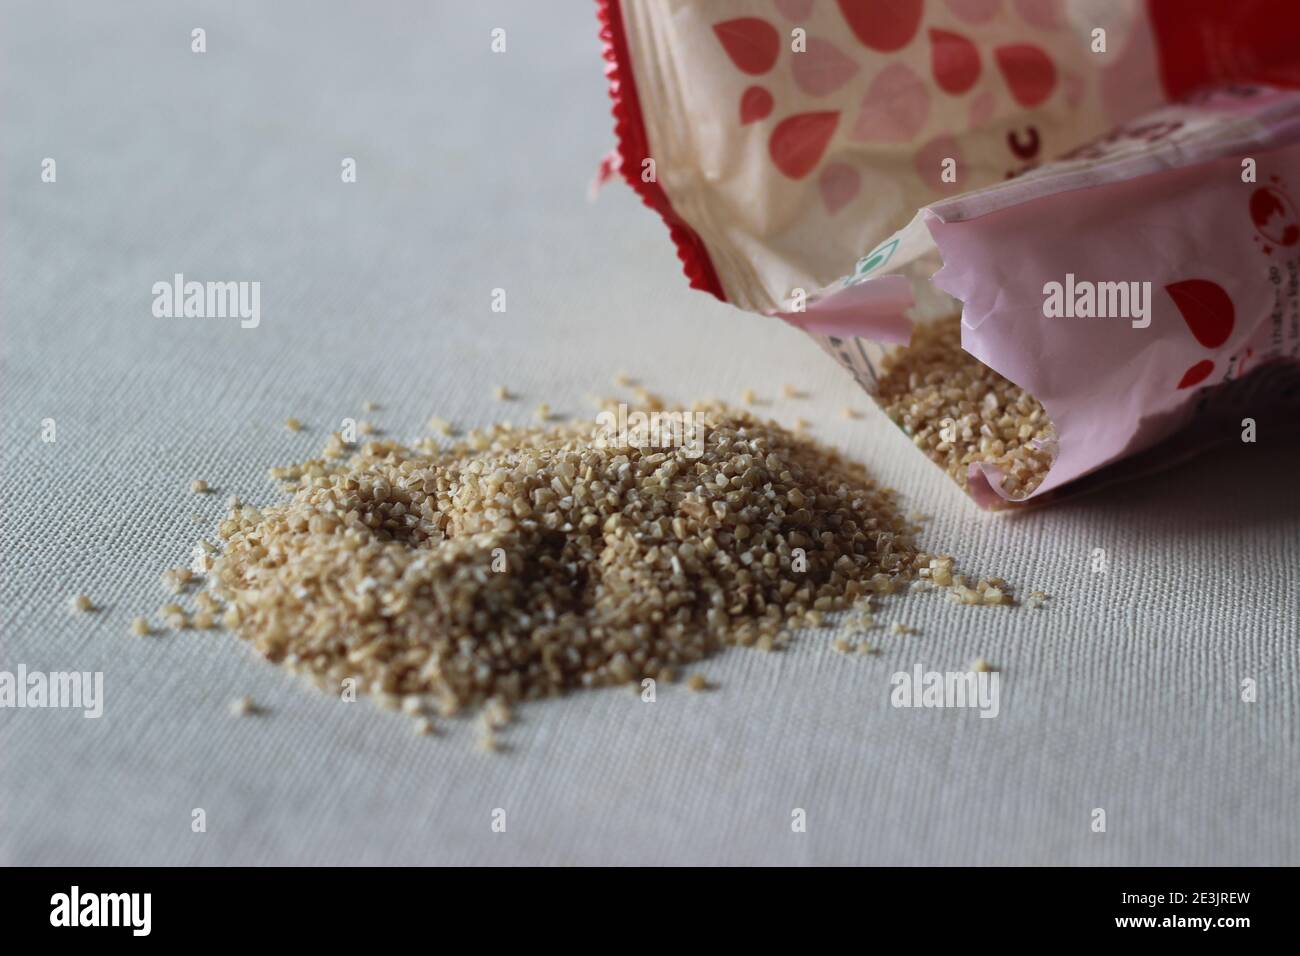 Le blé brisé ou le blé fissuré ou couscous est fabriqué par la mouture de grains de blé entier brut grossièrement utilisé pour rendre sain porridge Banque D'Images